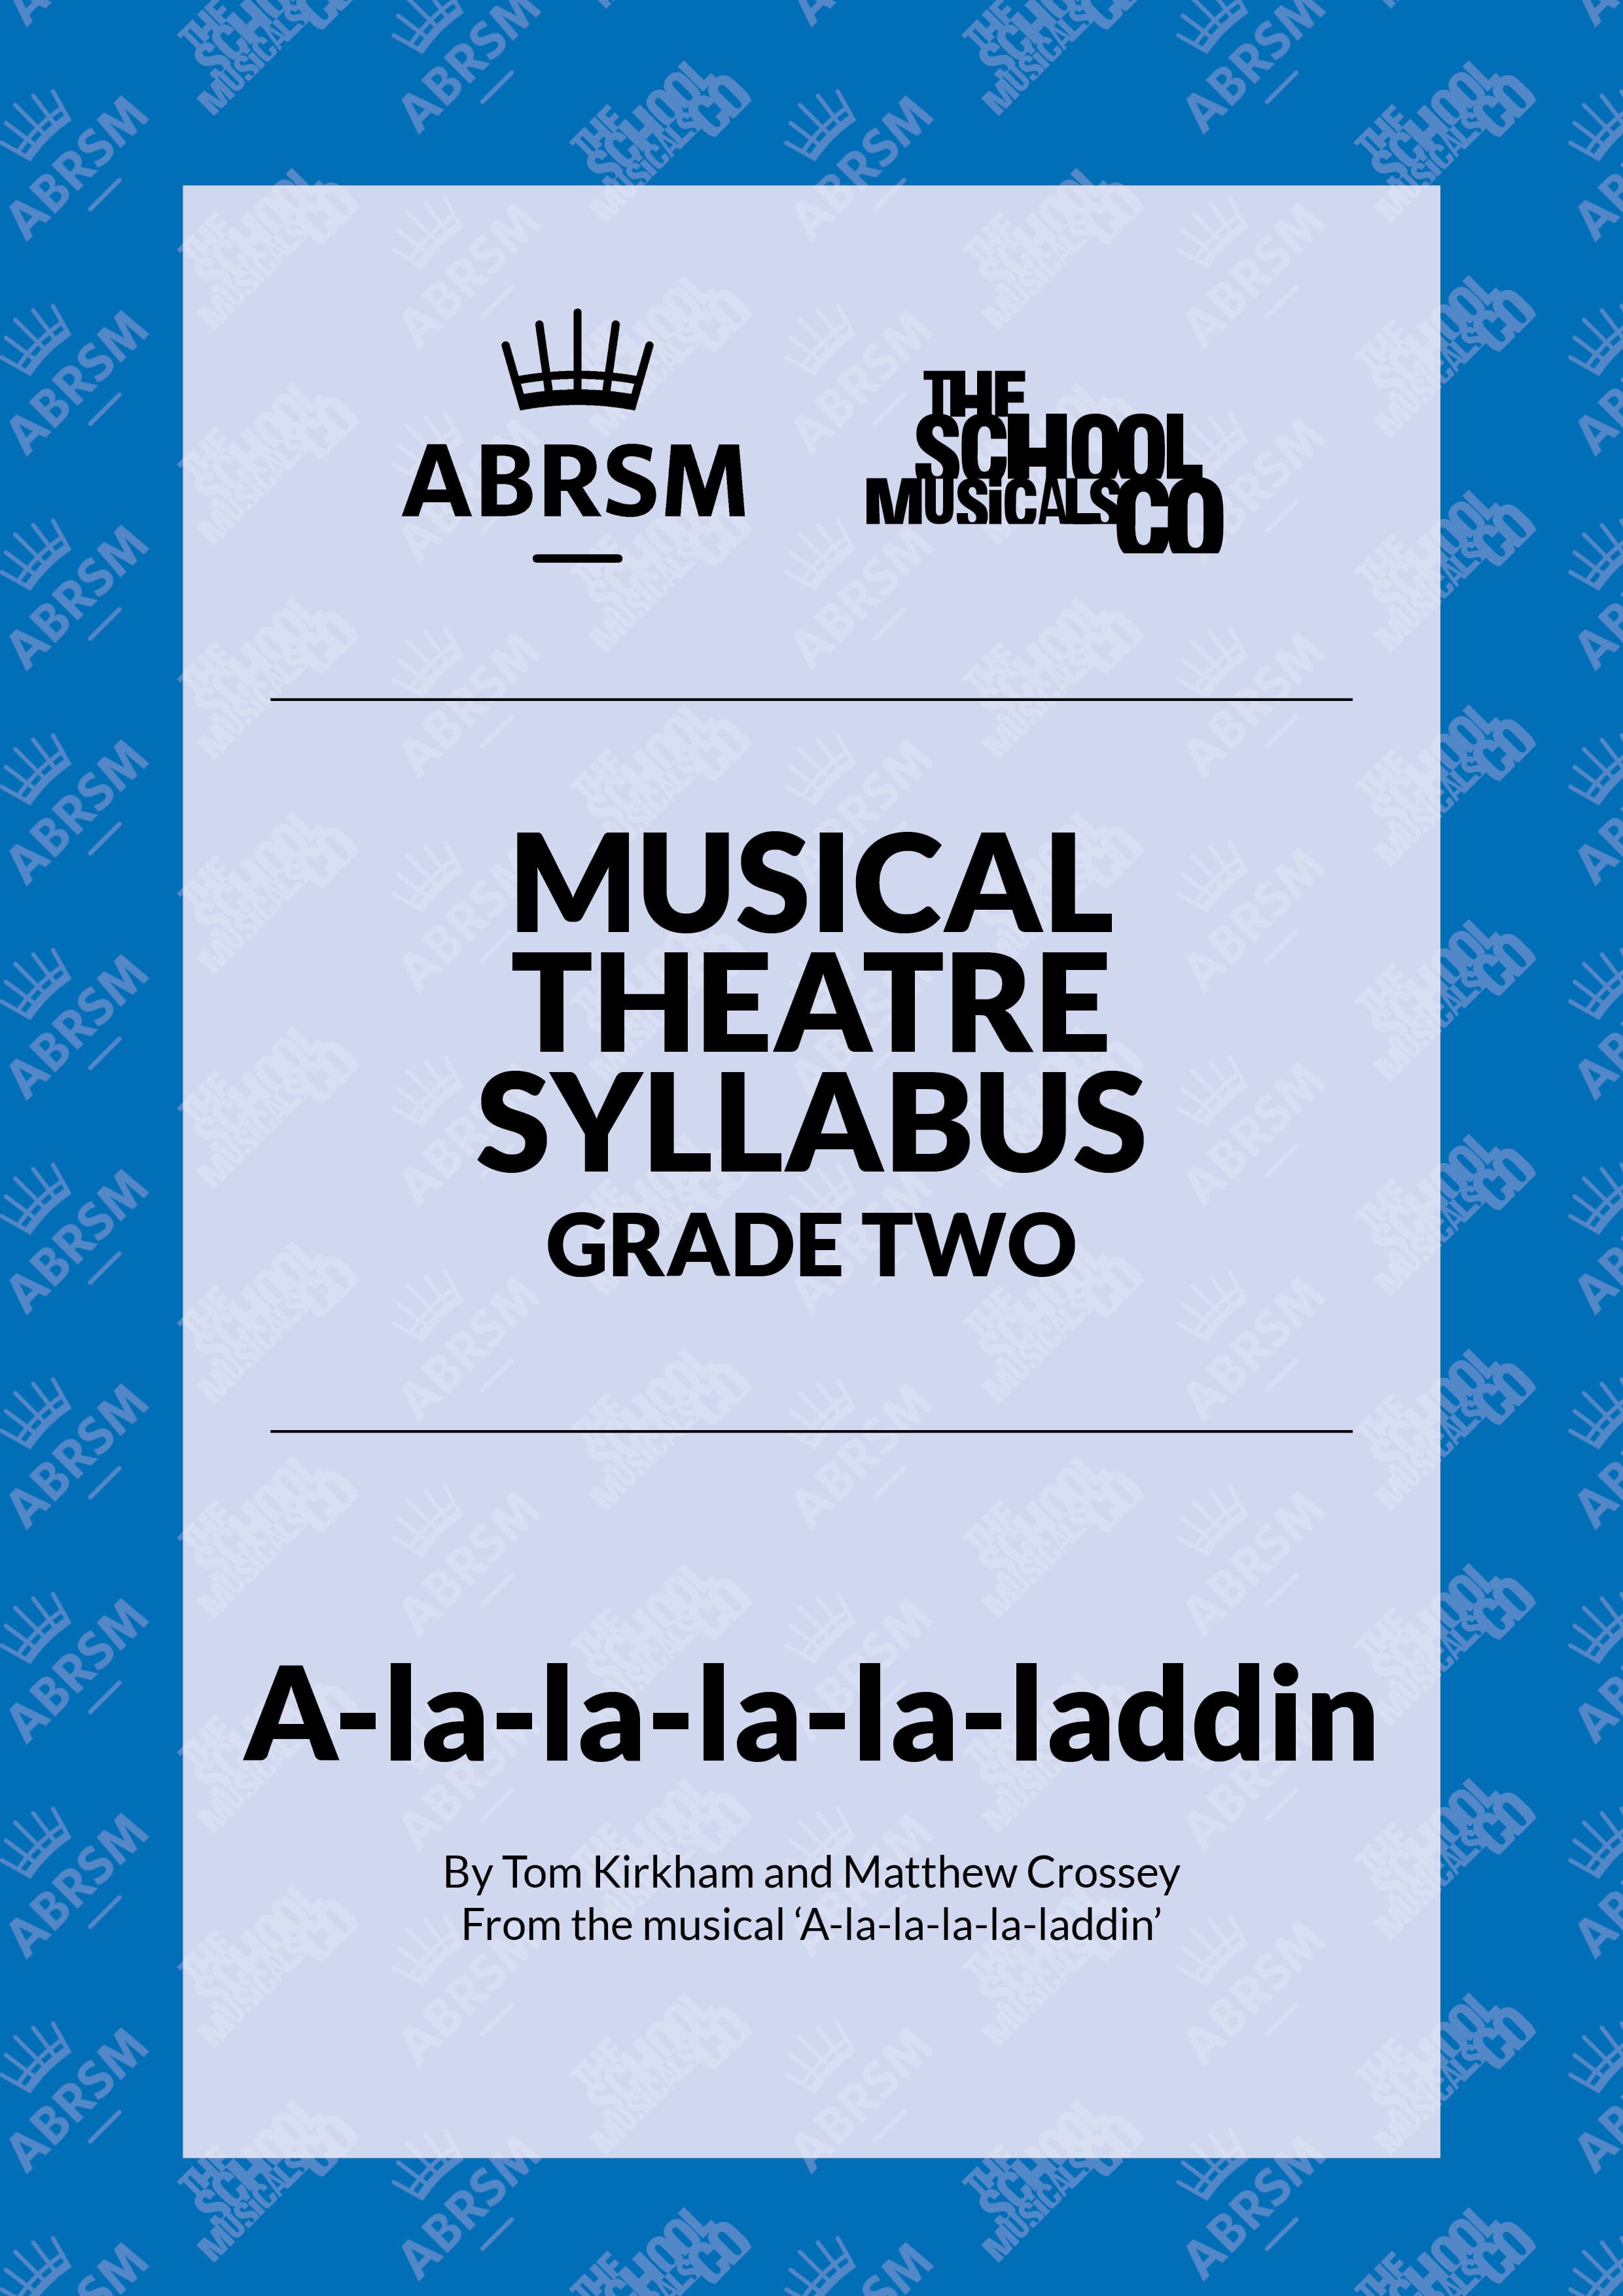 A-la-la-la-la-laddin - ABRSM Musical Theatre Syllabus Grade Two